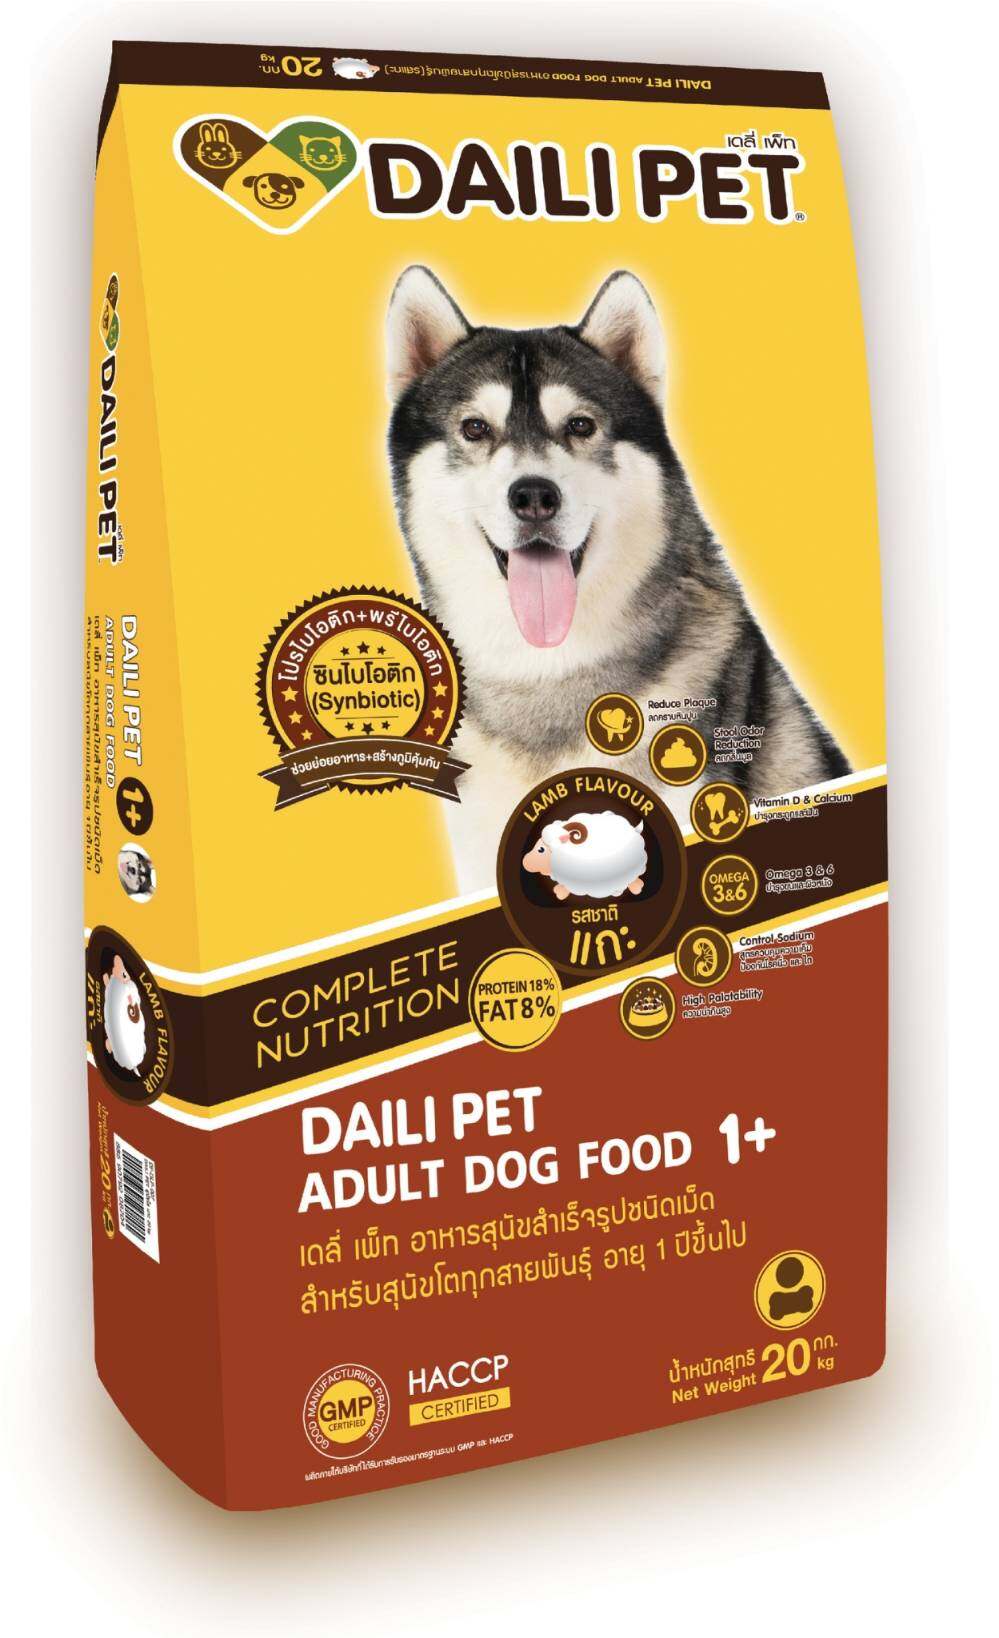 เดลี่ เพ็ท อาหารสุนัขโต สูตรแกะ  สำเร็จรูป ชนิดเม็ด สำหรับสุนัขโตทุกสายพันธุ์ 20 กิโลกรัม